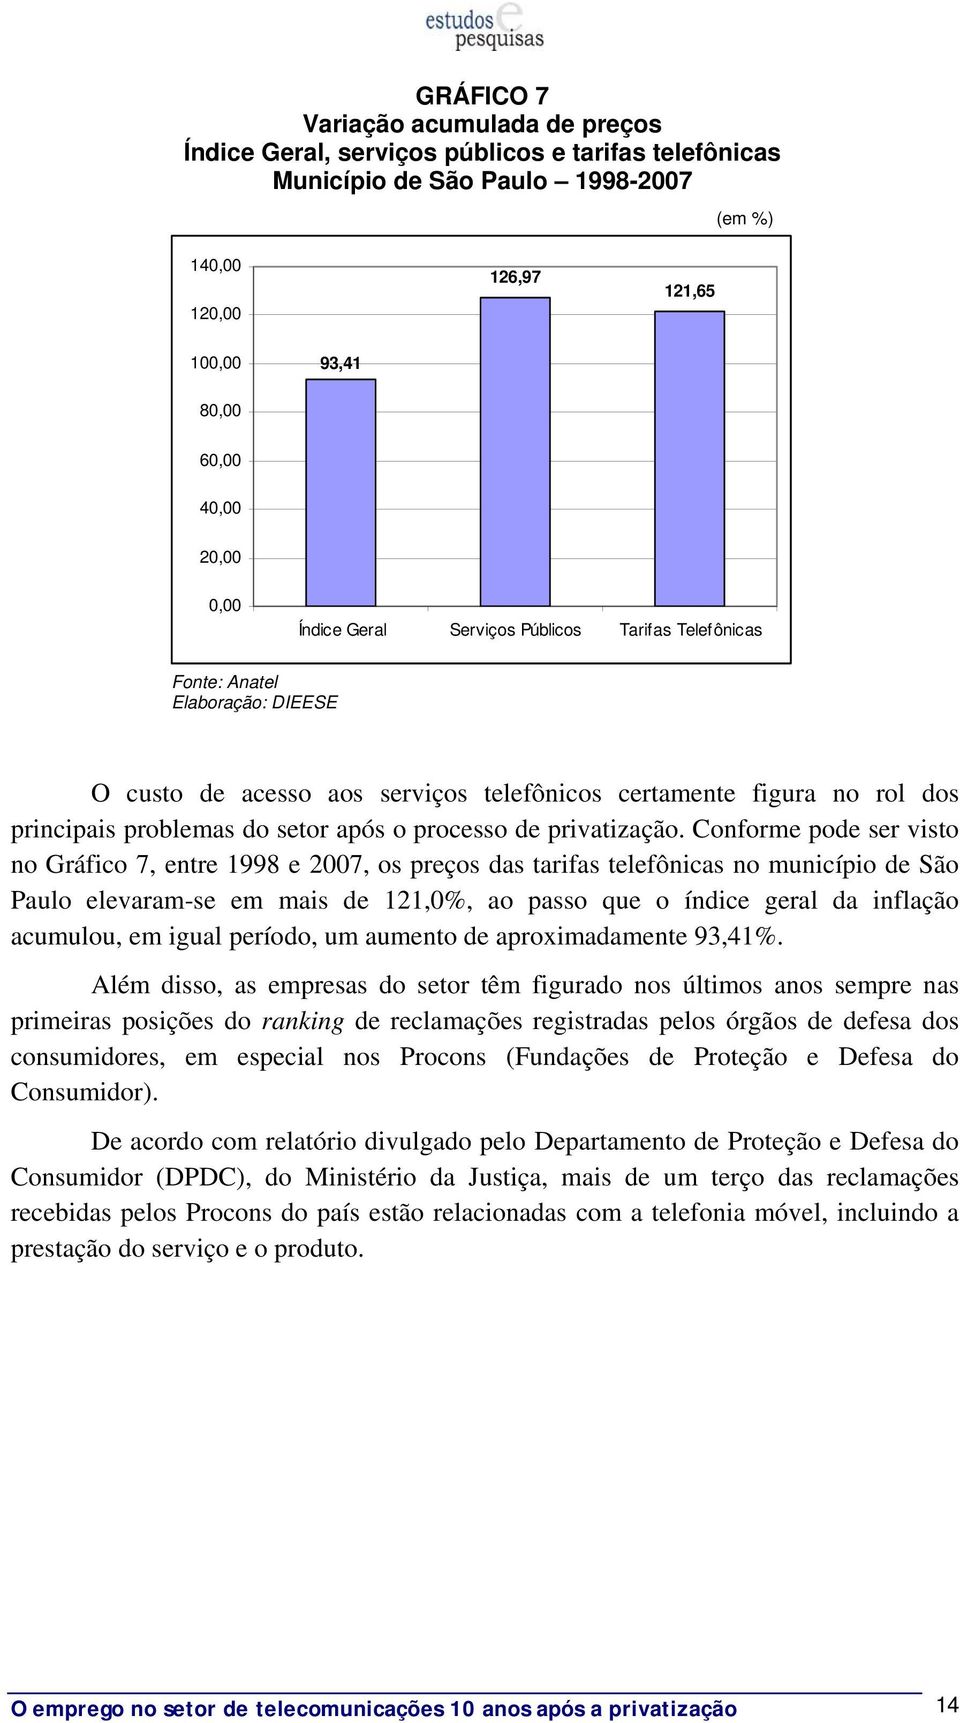 Conforme pode ser visto no Gráfico 7, entre 1998 e 2007, os preços das tarifas telefônicas no município de São Paulo elevaram-se em mais de 121,0%, ao passo que o índice geral da inflação acumulou,